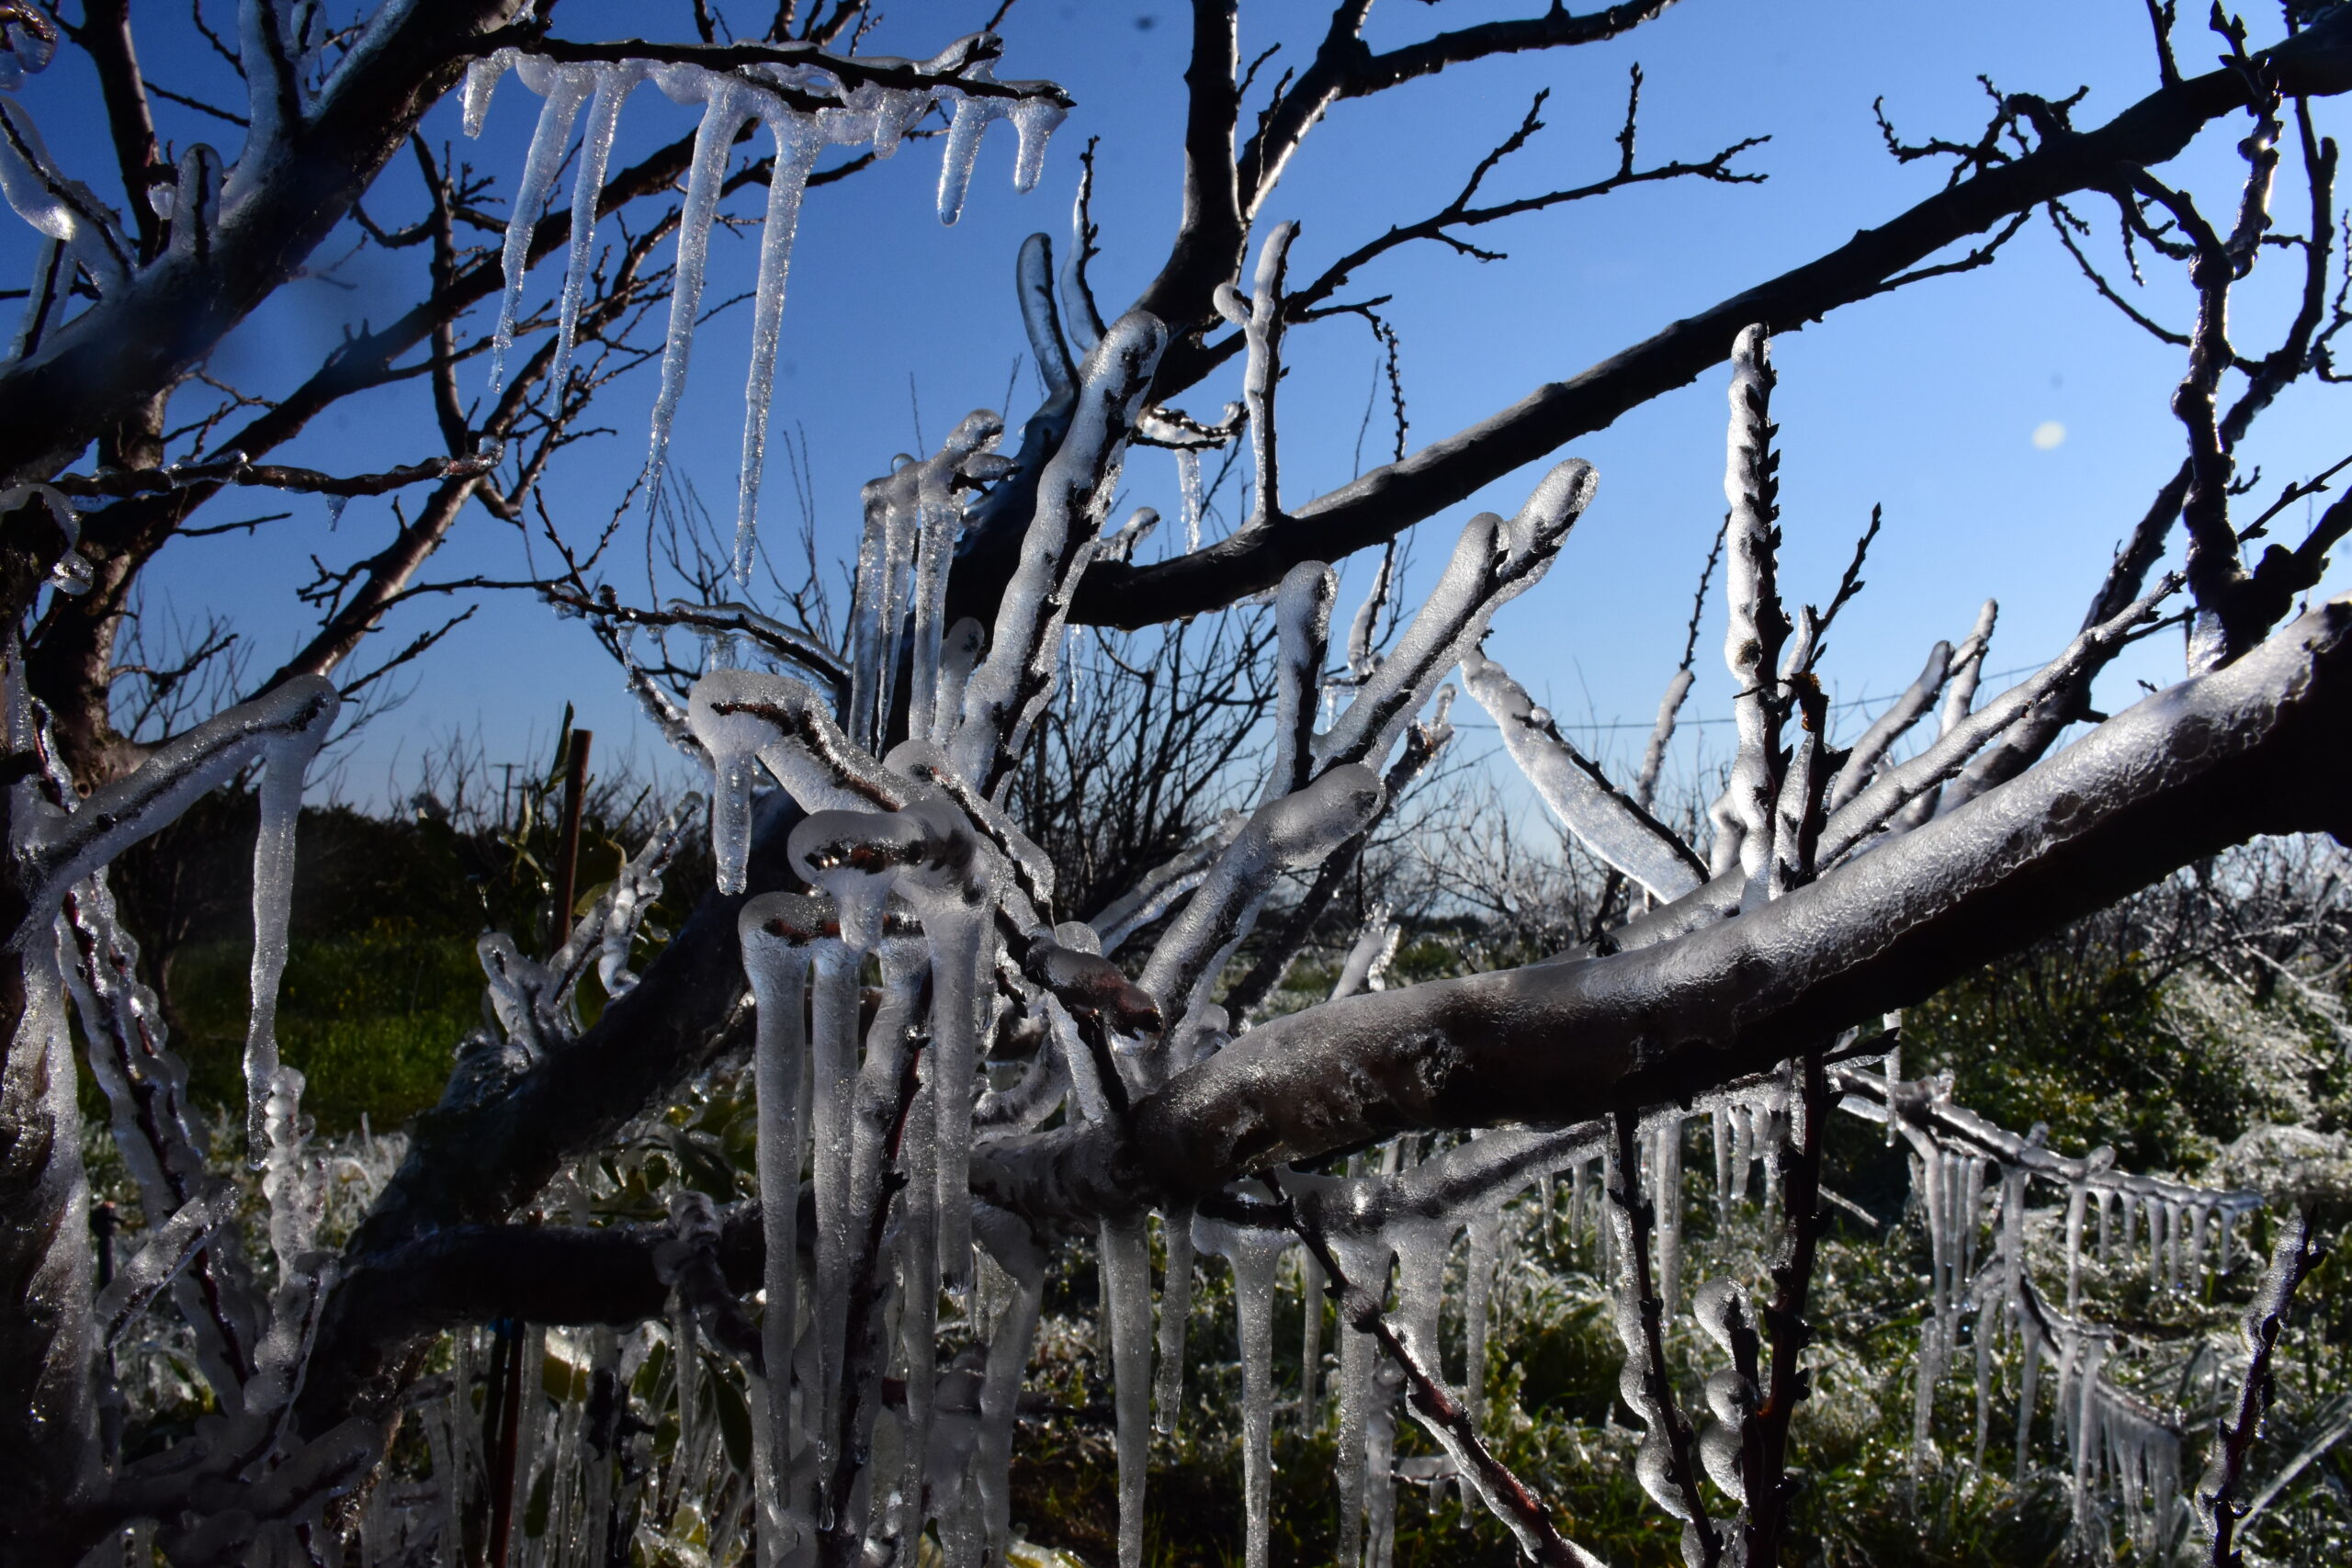 O καιρός με τον Παναγιώτη Γιαννόπουλο: Ήλιος με «δόντια» – Ισχυρός παγετός και κρύο